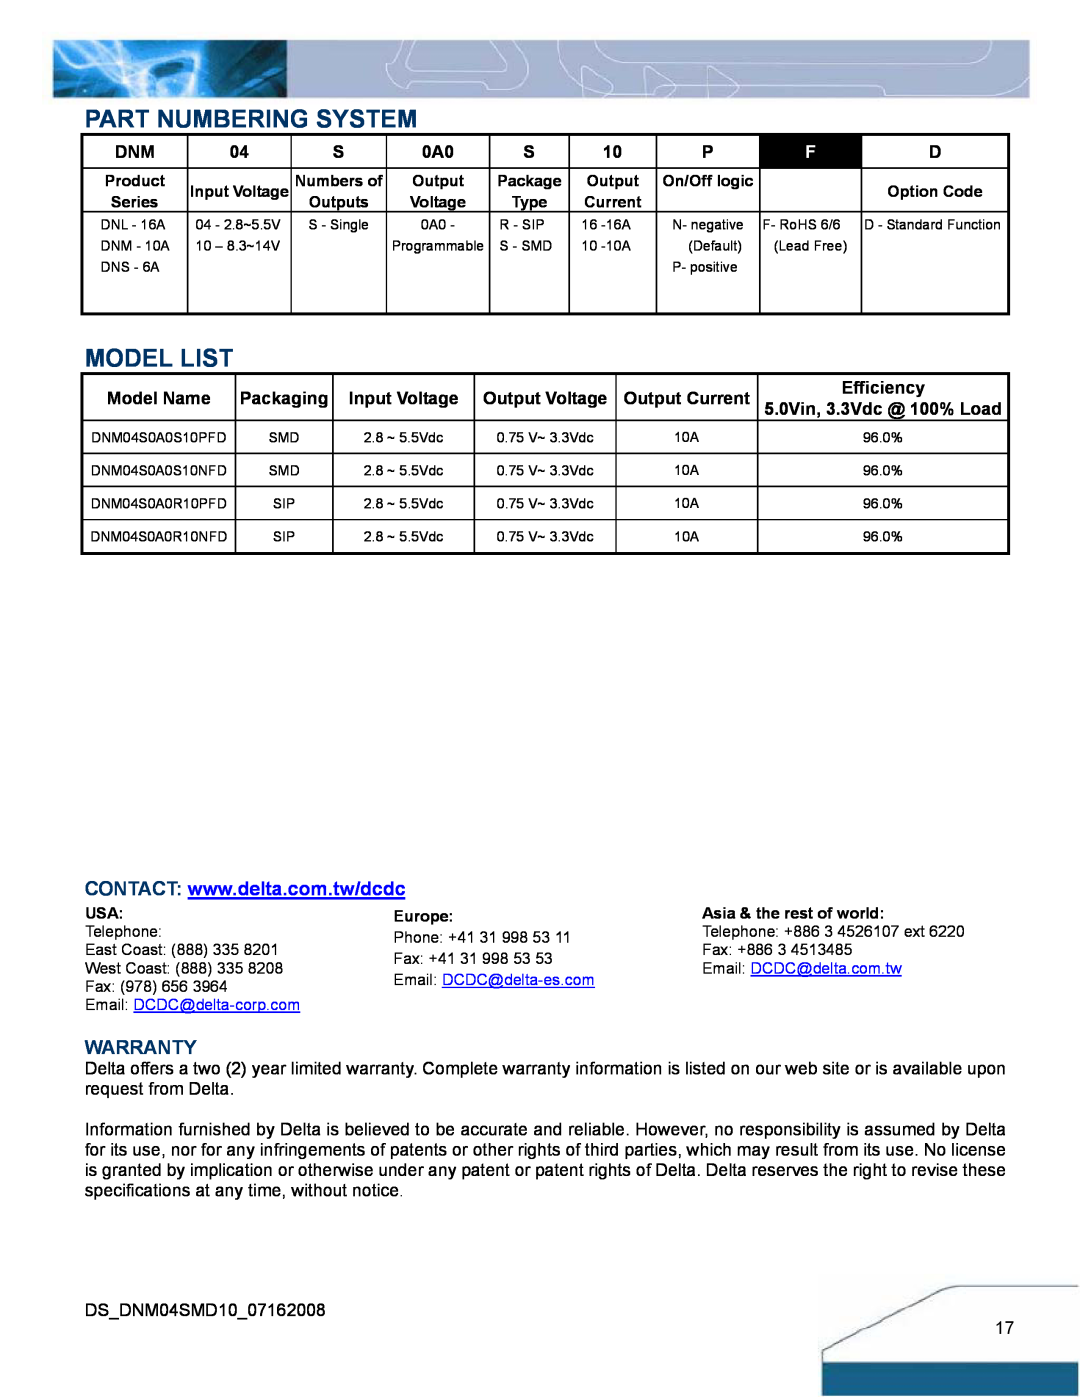 Delta Electronics 2.8-5.5Vin, 10A, 0.75-3.3V manual Part Numbering System, Model List, Warranty 